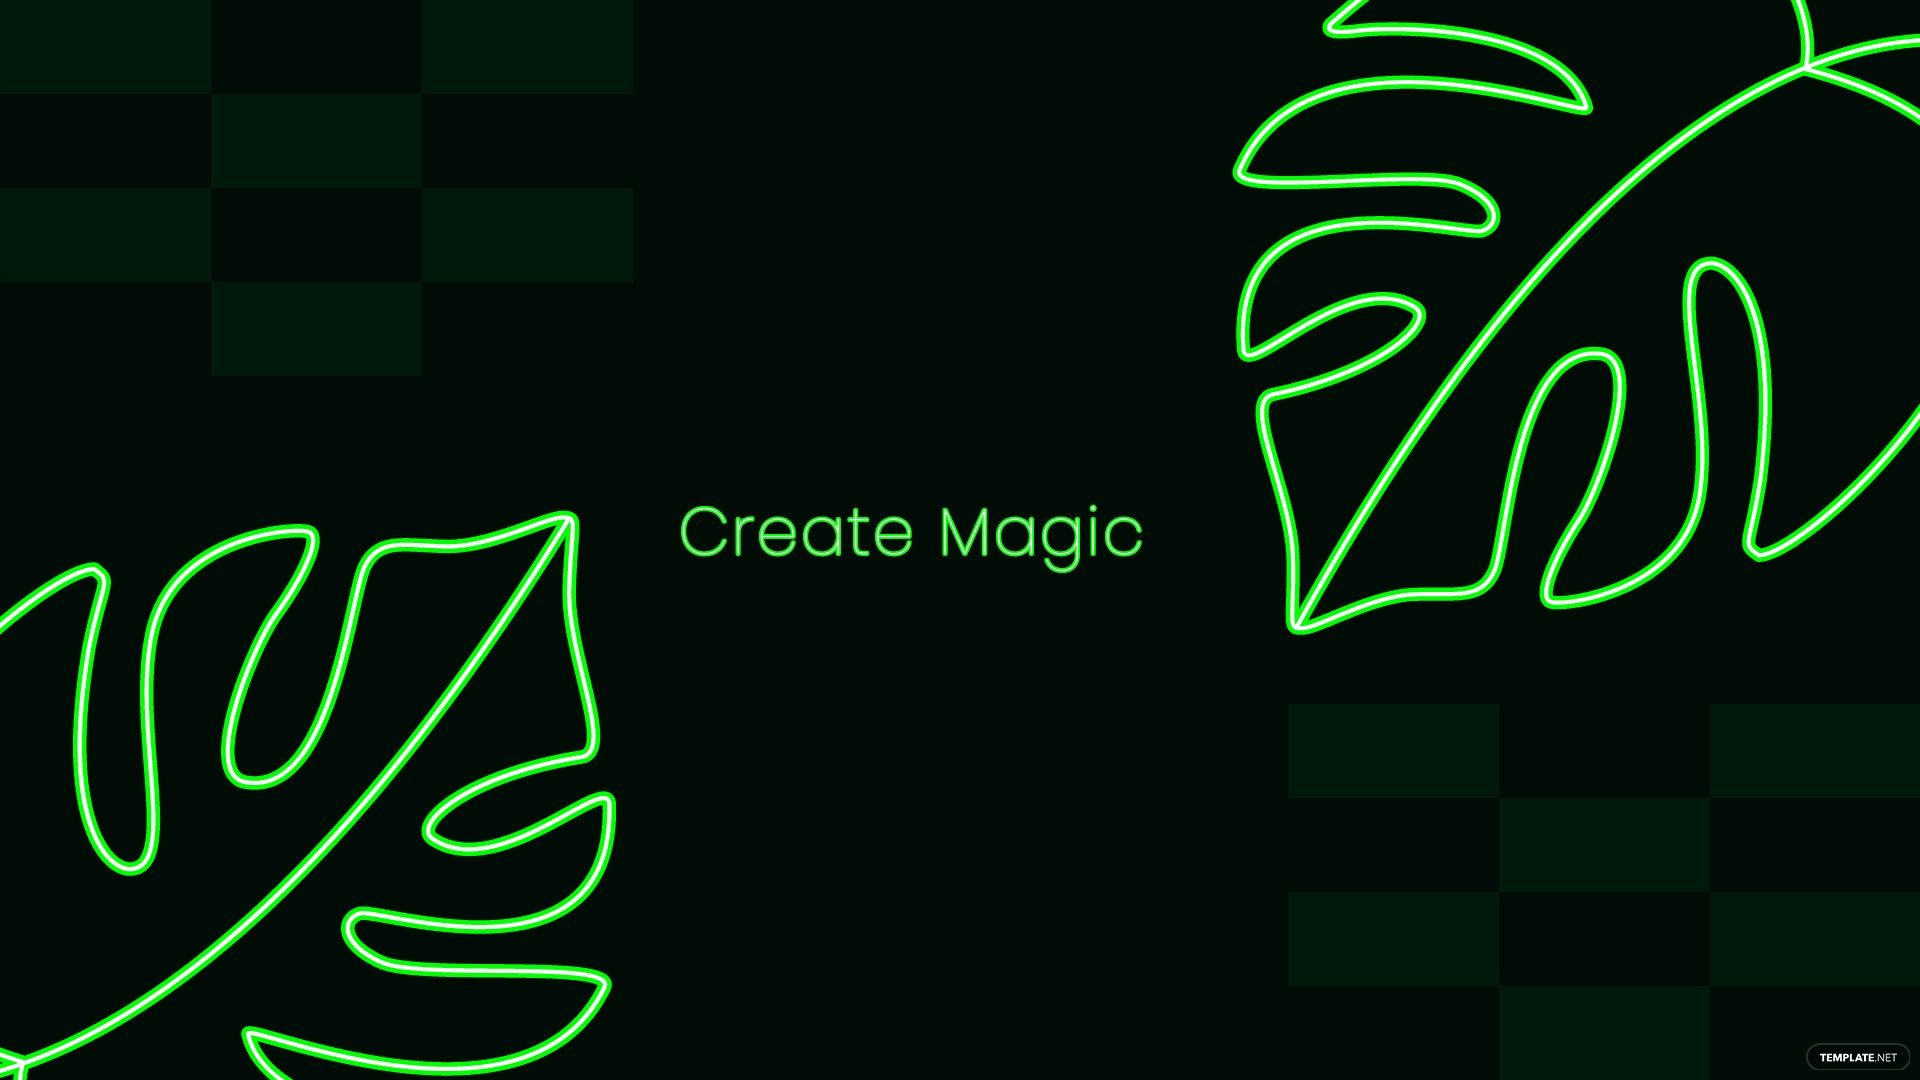 Free Neon Green Aesthetic Wallpaper in Illustrator, EPS, SVG, JPG, PNG